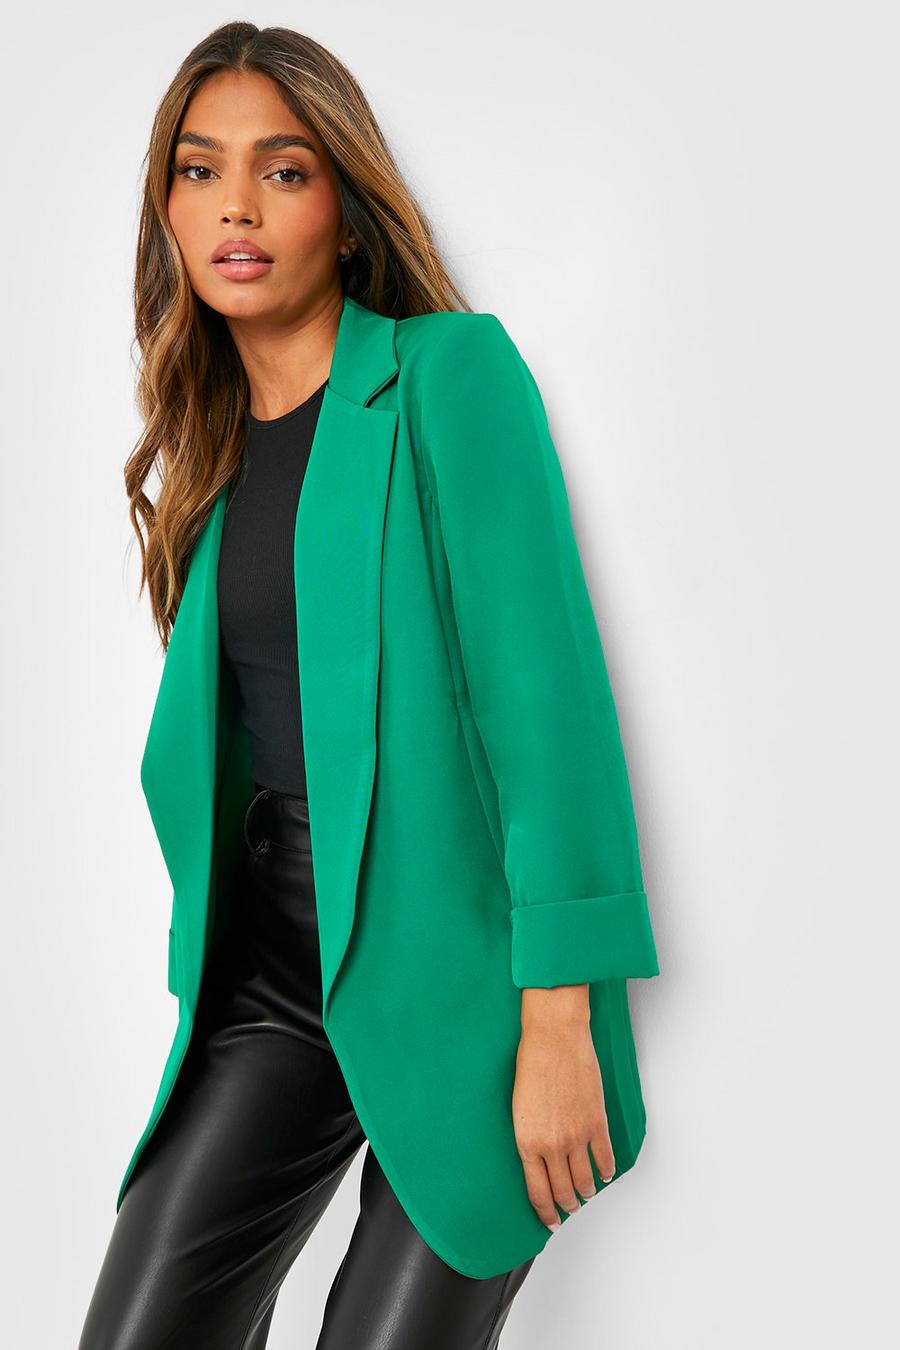 JDEFEG Dressy Jackets for Women Coat Retro Outwear Zipper Jacket Ladies  Womens Up Casual Women's Coat Cute Jackets Women Trendy Othe Green M